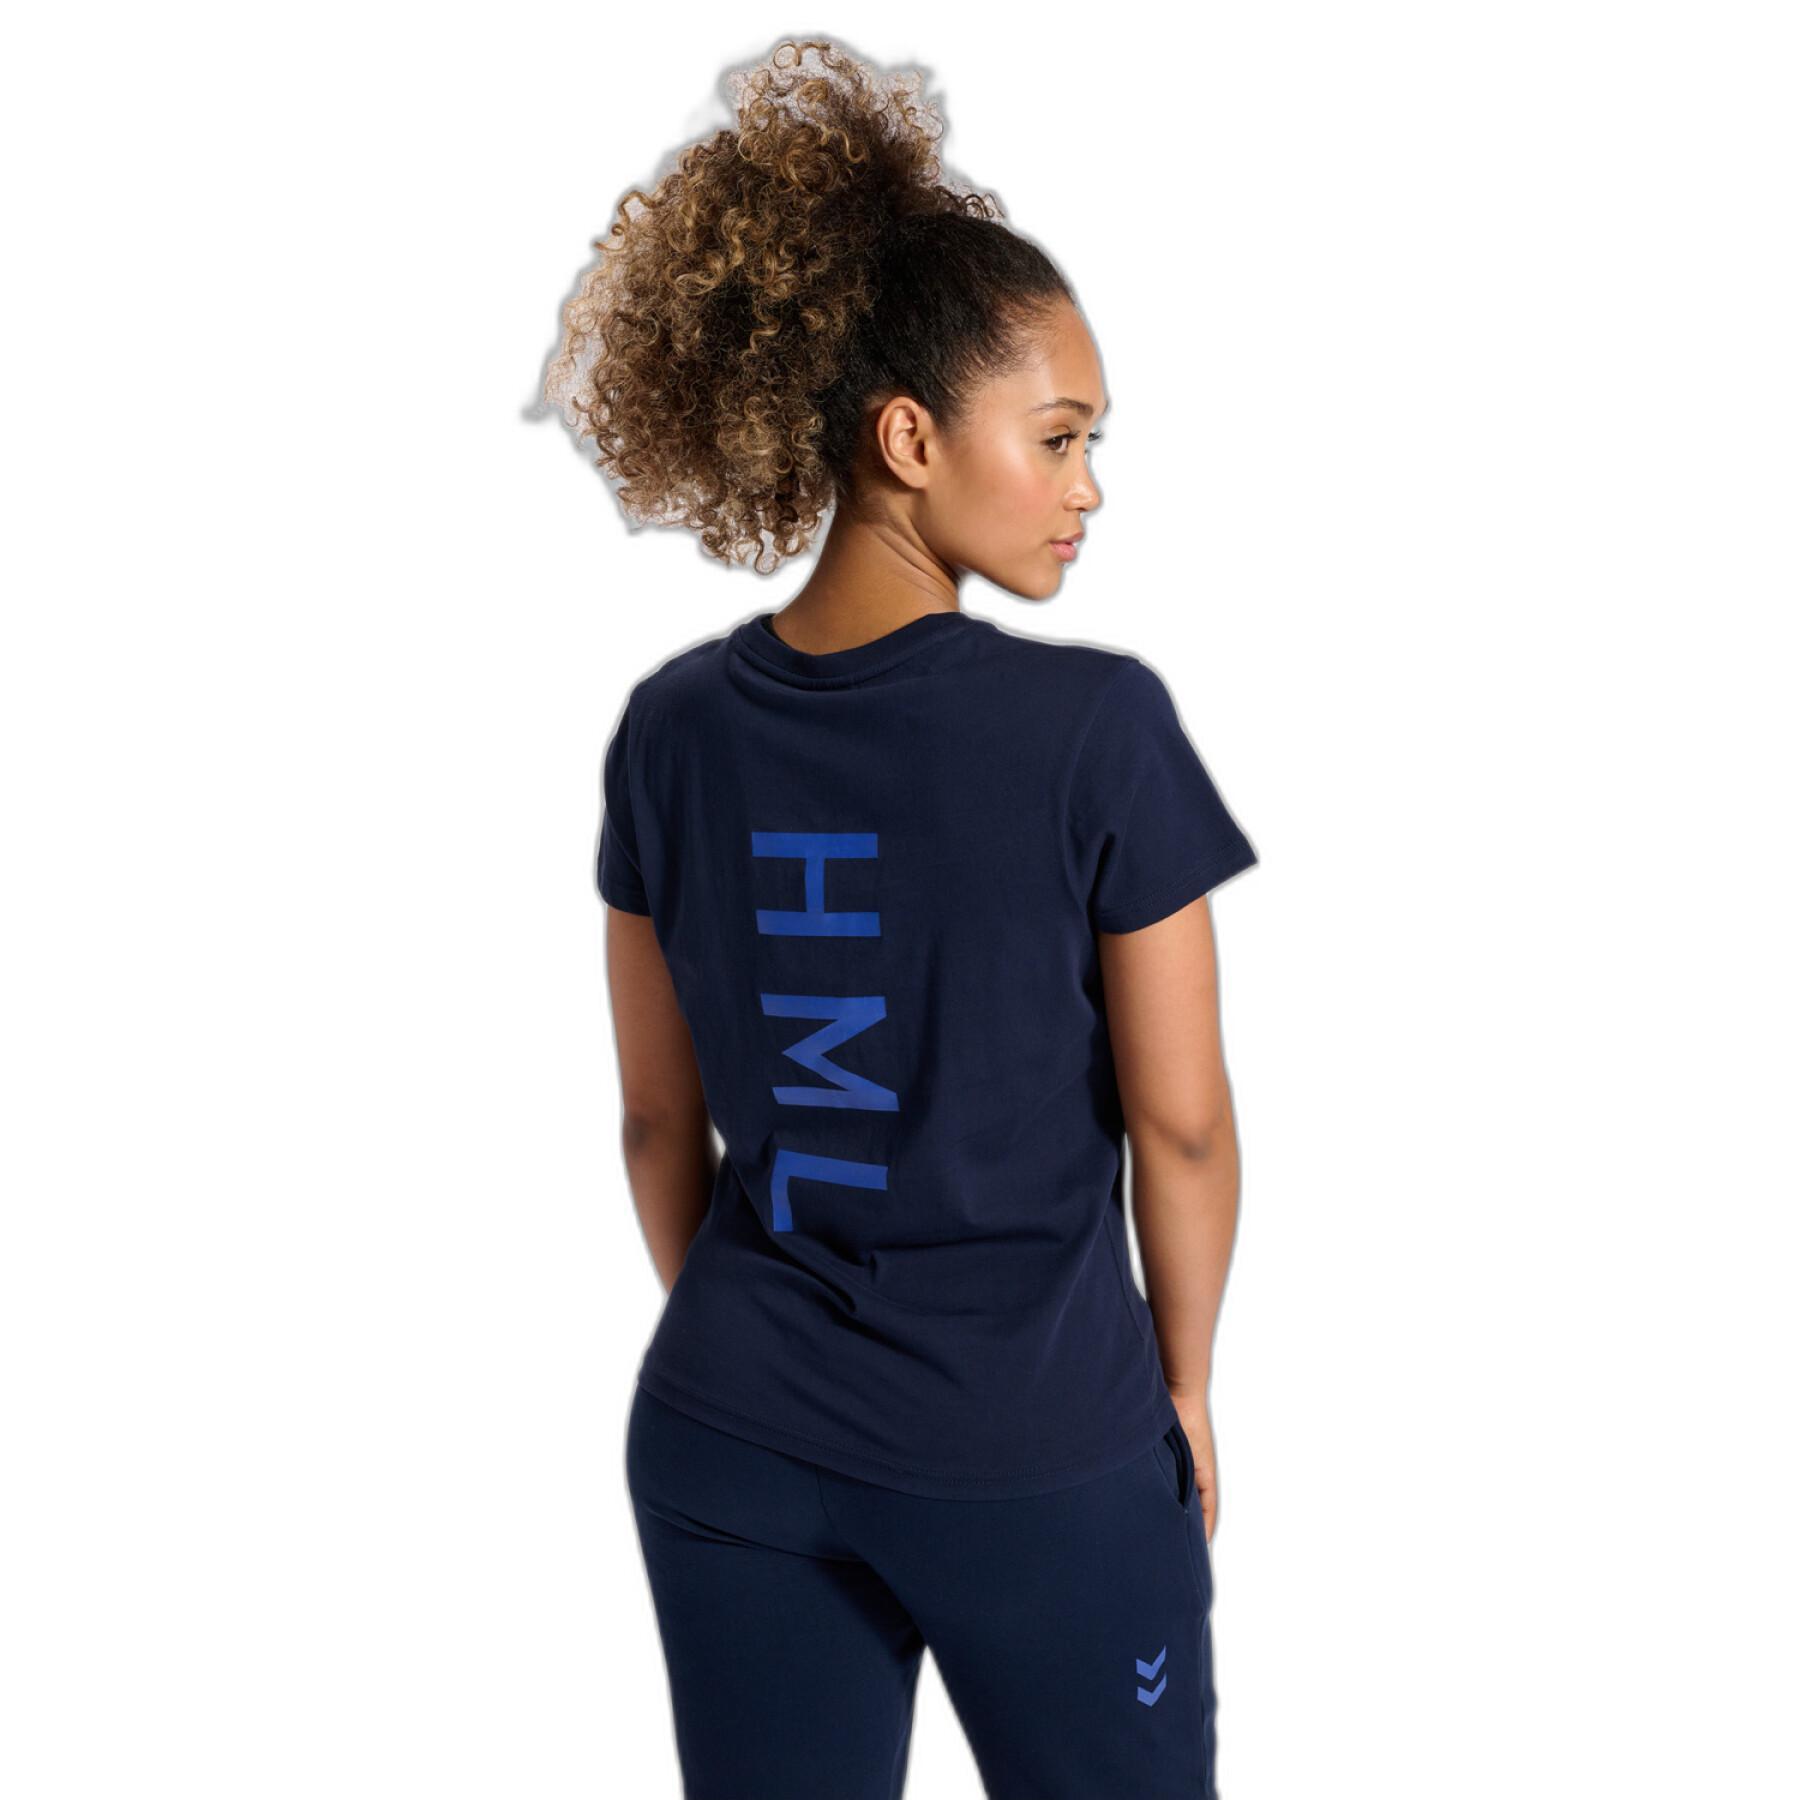 Katoenen dames-T-shirt Hummel HmlCourt